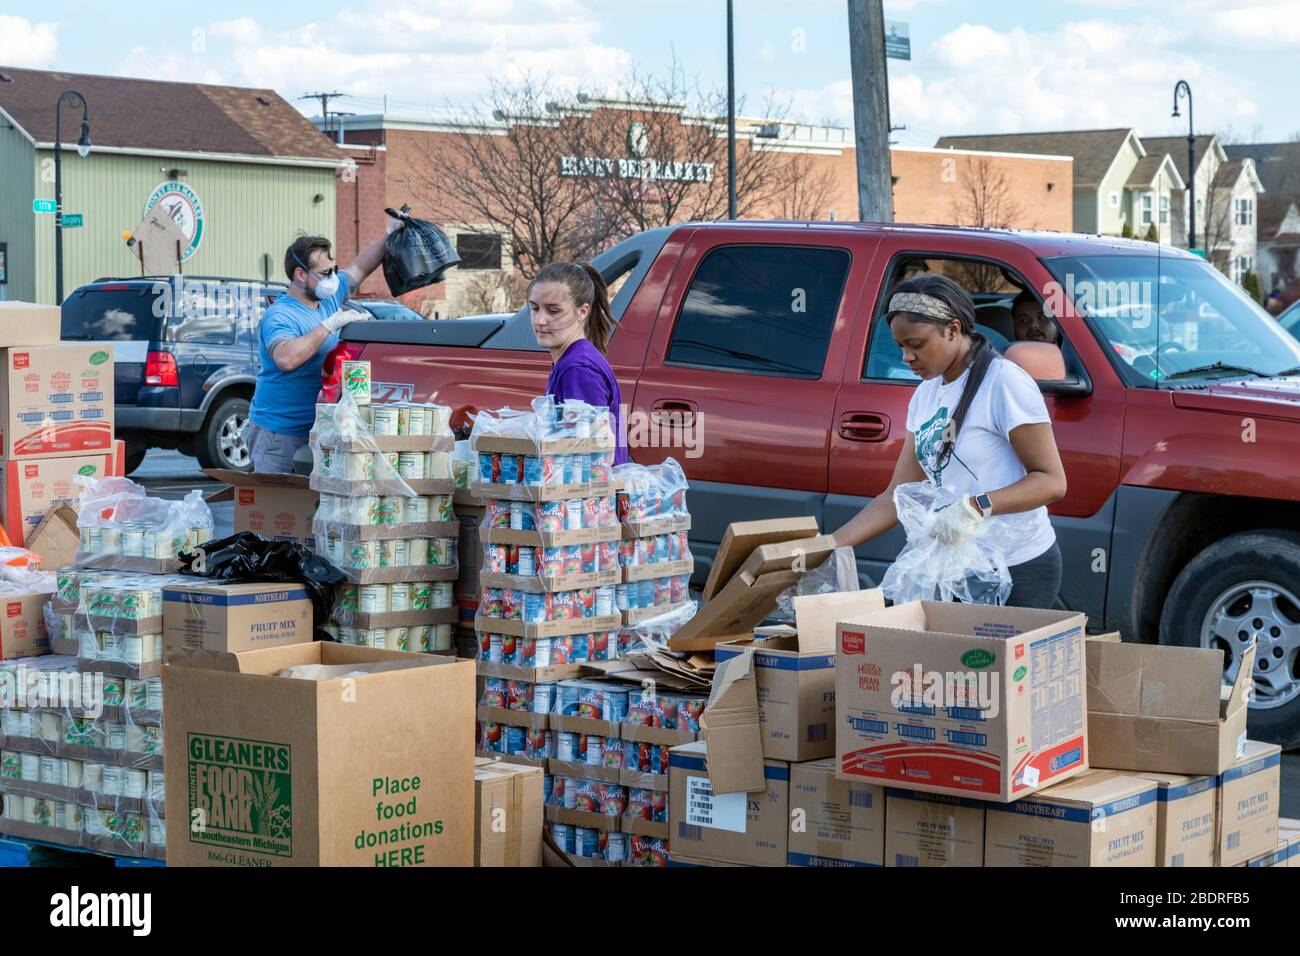 Detroit, Michigan, États-Unis. 8 avril 2020. Pendant la crise du coronavirus, la banque alimentaire communautaire Gleaners distribue des aliments gratuits aux résidents dans le besoin du sud-ouest de Detroit. Crédit: Jim West/Alay Live News Banque D'Images